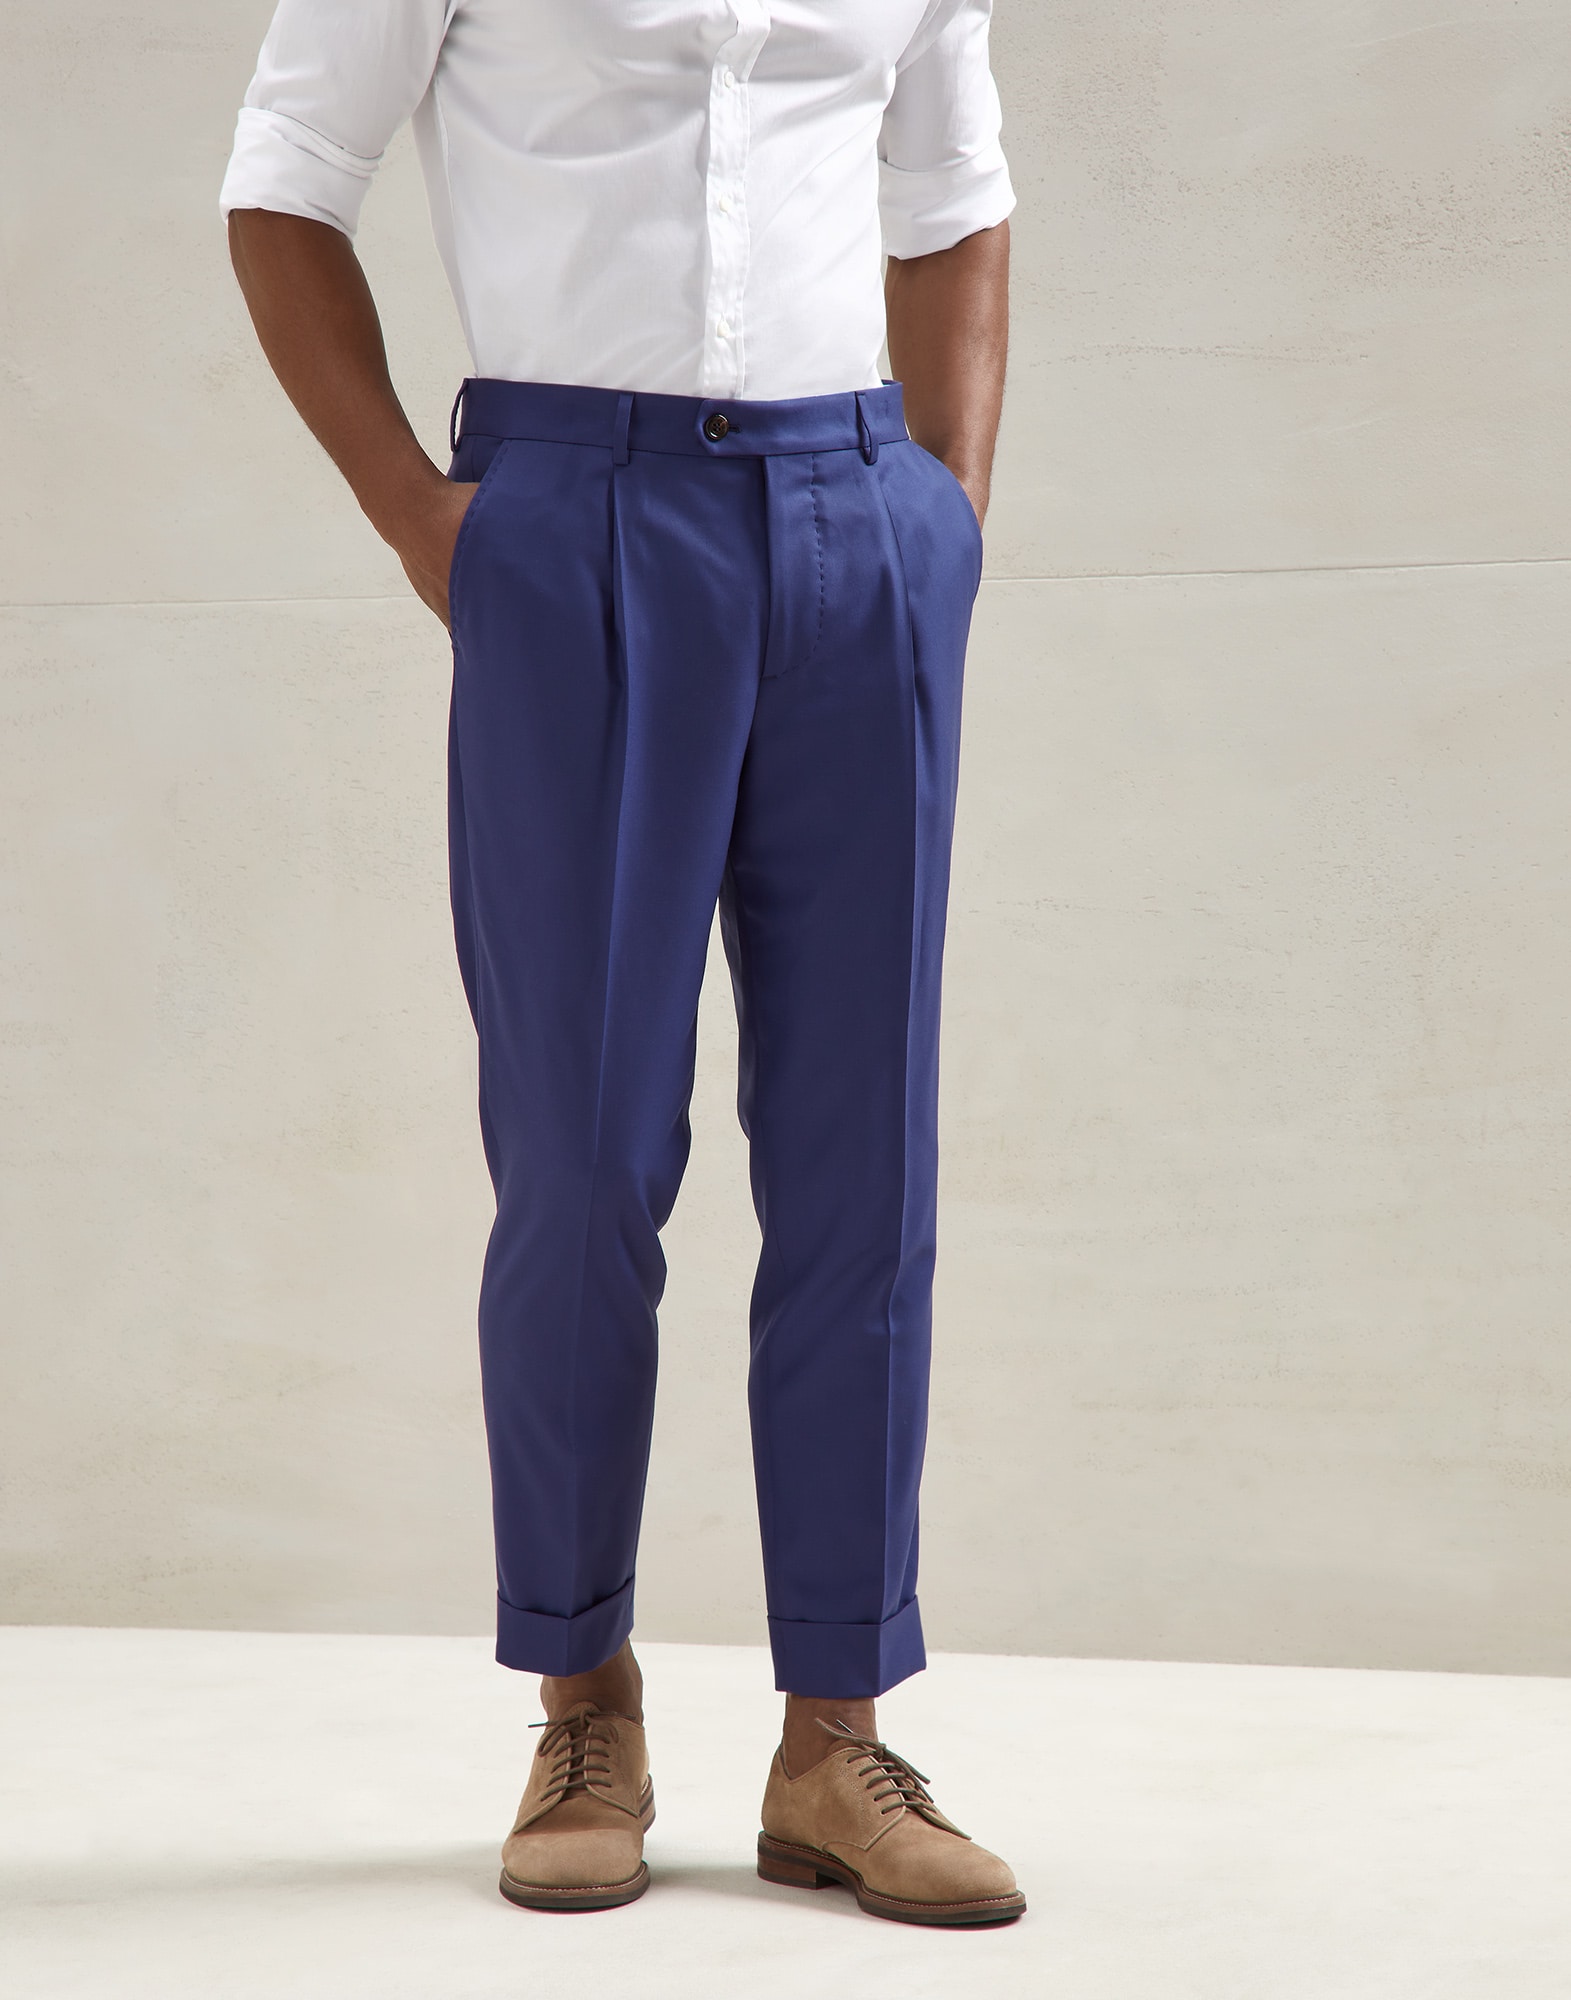 BRUNELLO CUCINELLI Blue Cotton Gabardine Pants Trousers Slim Fit 54 NEW 38 2017